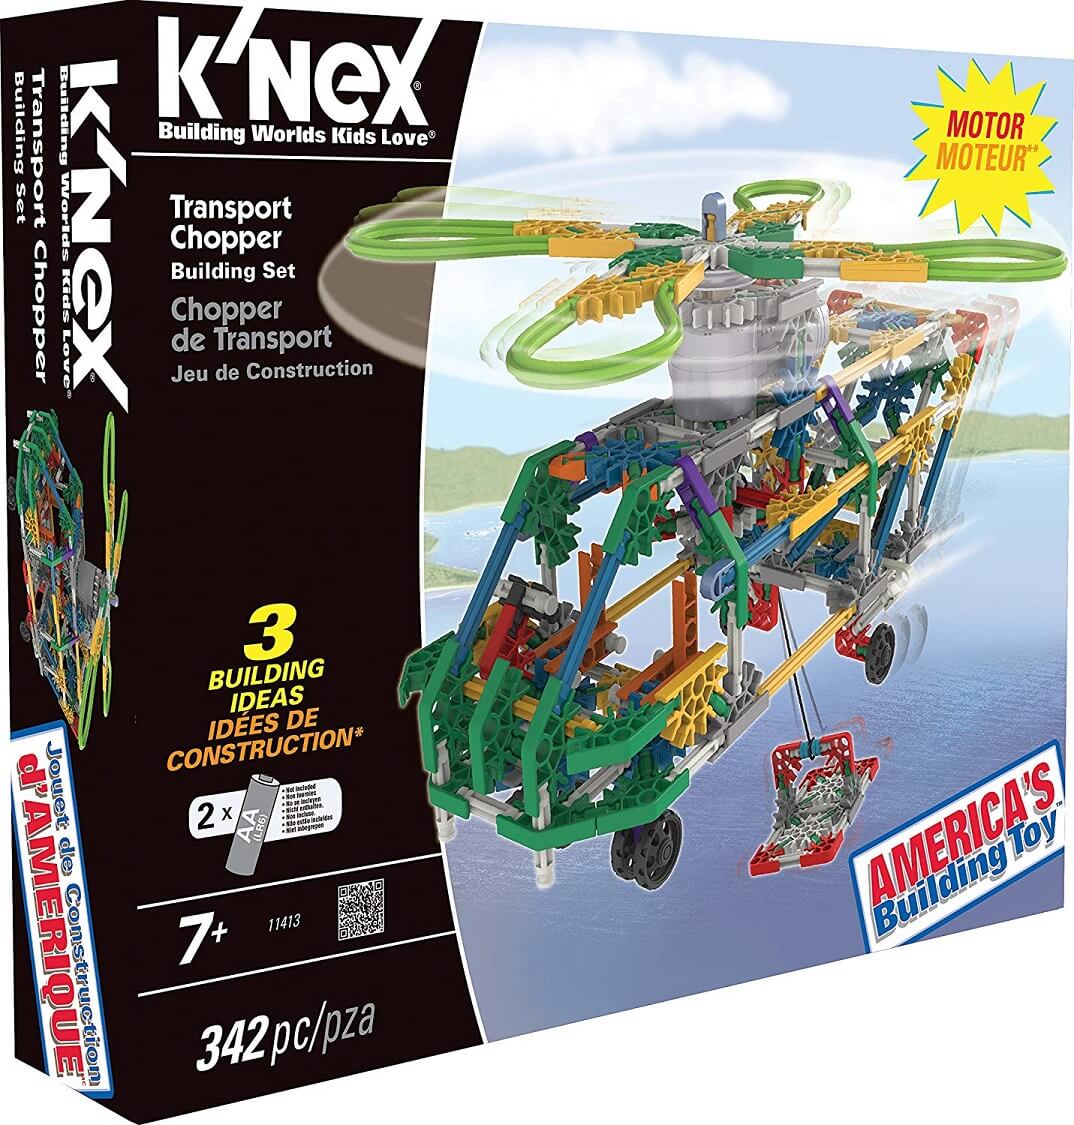 Helicoptero transporte ( KNEX 11413 ) imagen e